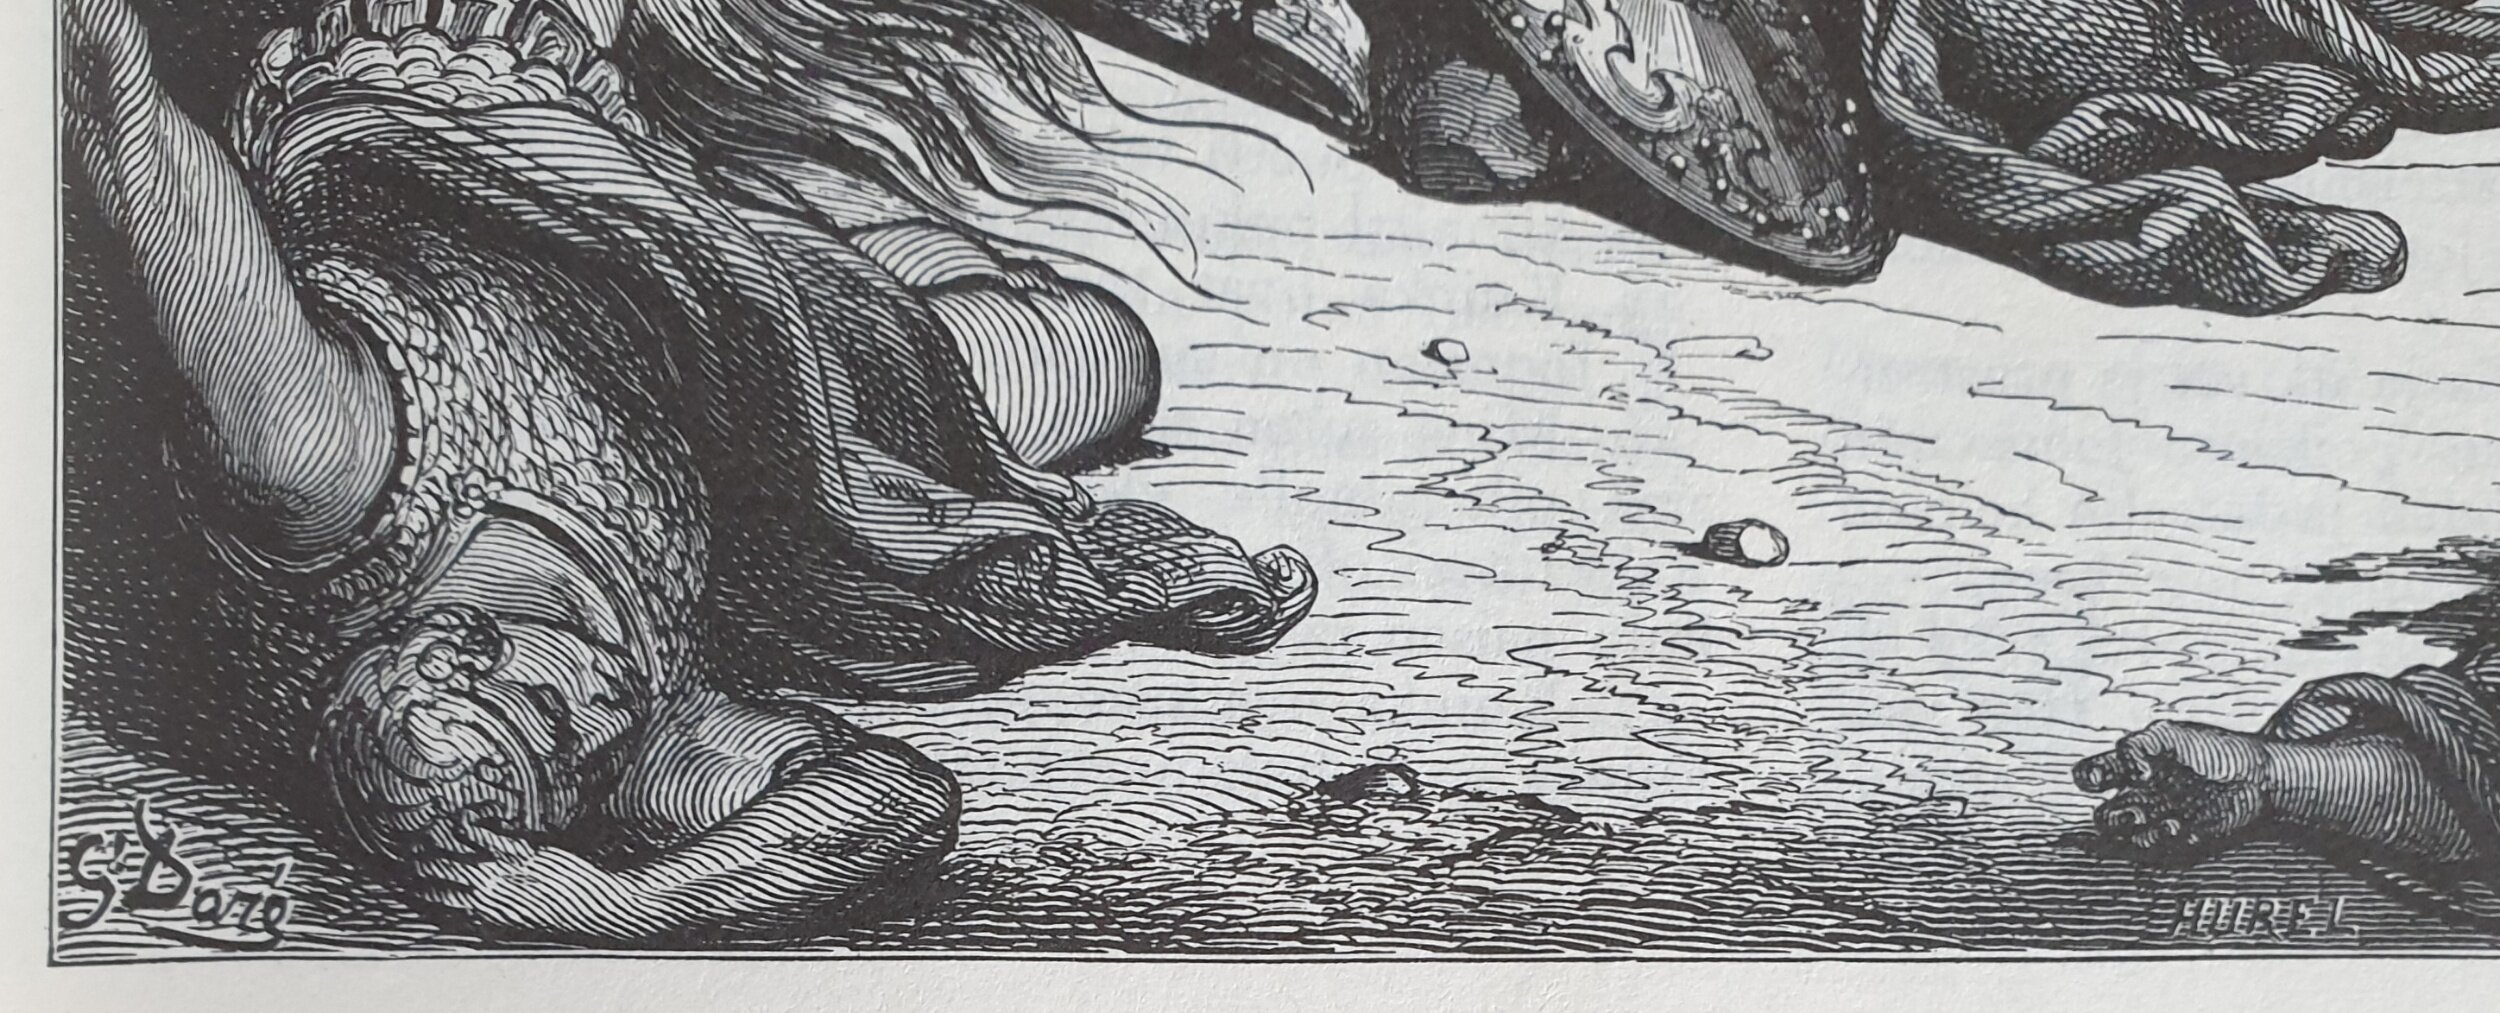  Gustave Dorén tunnetuissa raamattuaiheisissa puukaiverruksissa löytyvät myös kaivertamisen suorittaneiden työpajojen tai käsityöläisten nimet, kuten tässä Alexandre Hurel. Vaikka esimerkissä on kyse kirjankuvittamisesta, niin käytäntö on yksittäin l